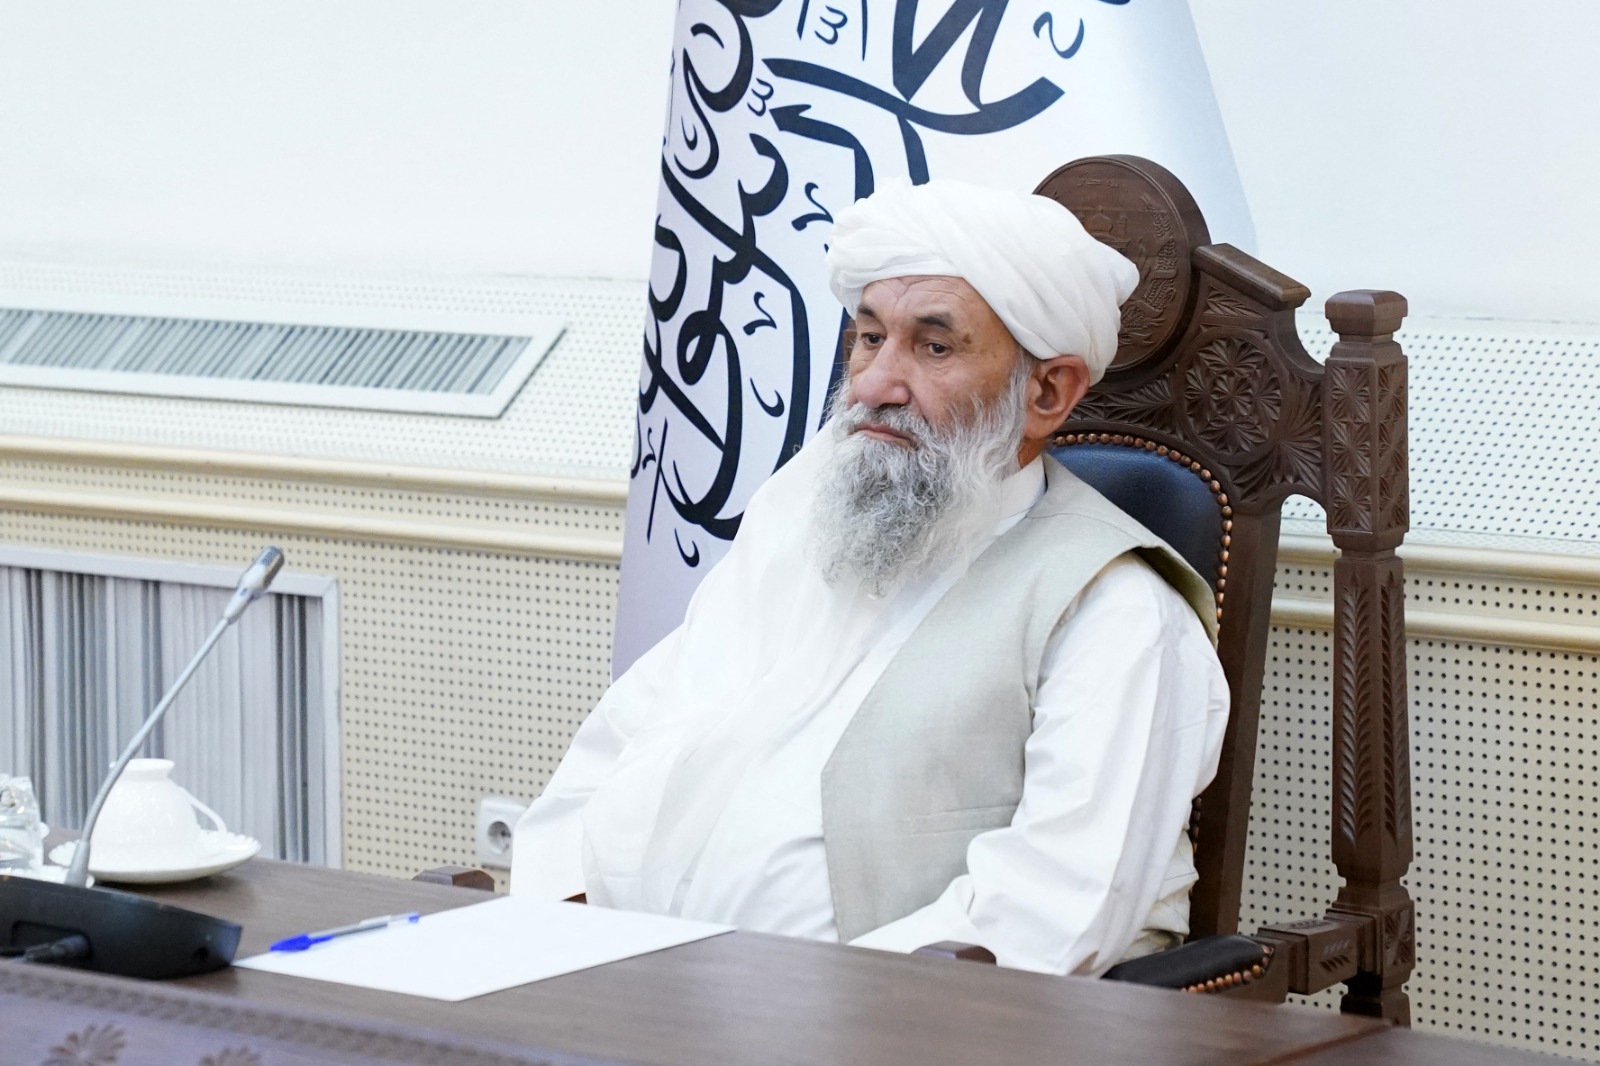 A tálibok ügyvivő miniszterelnöke elmondta, mit tűztek ki céljuknak